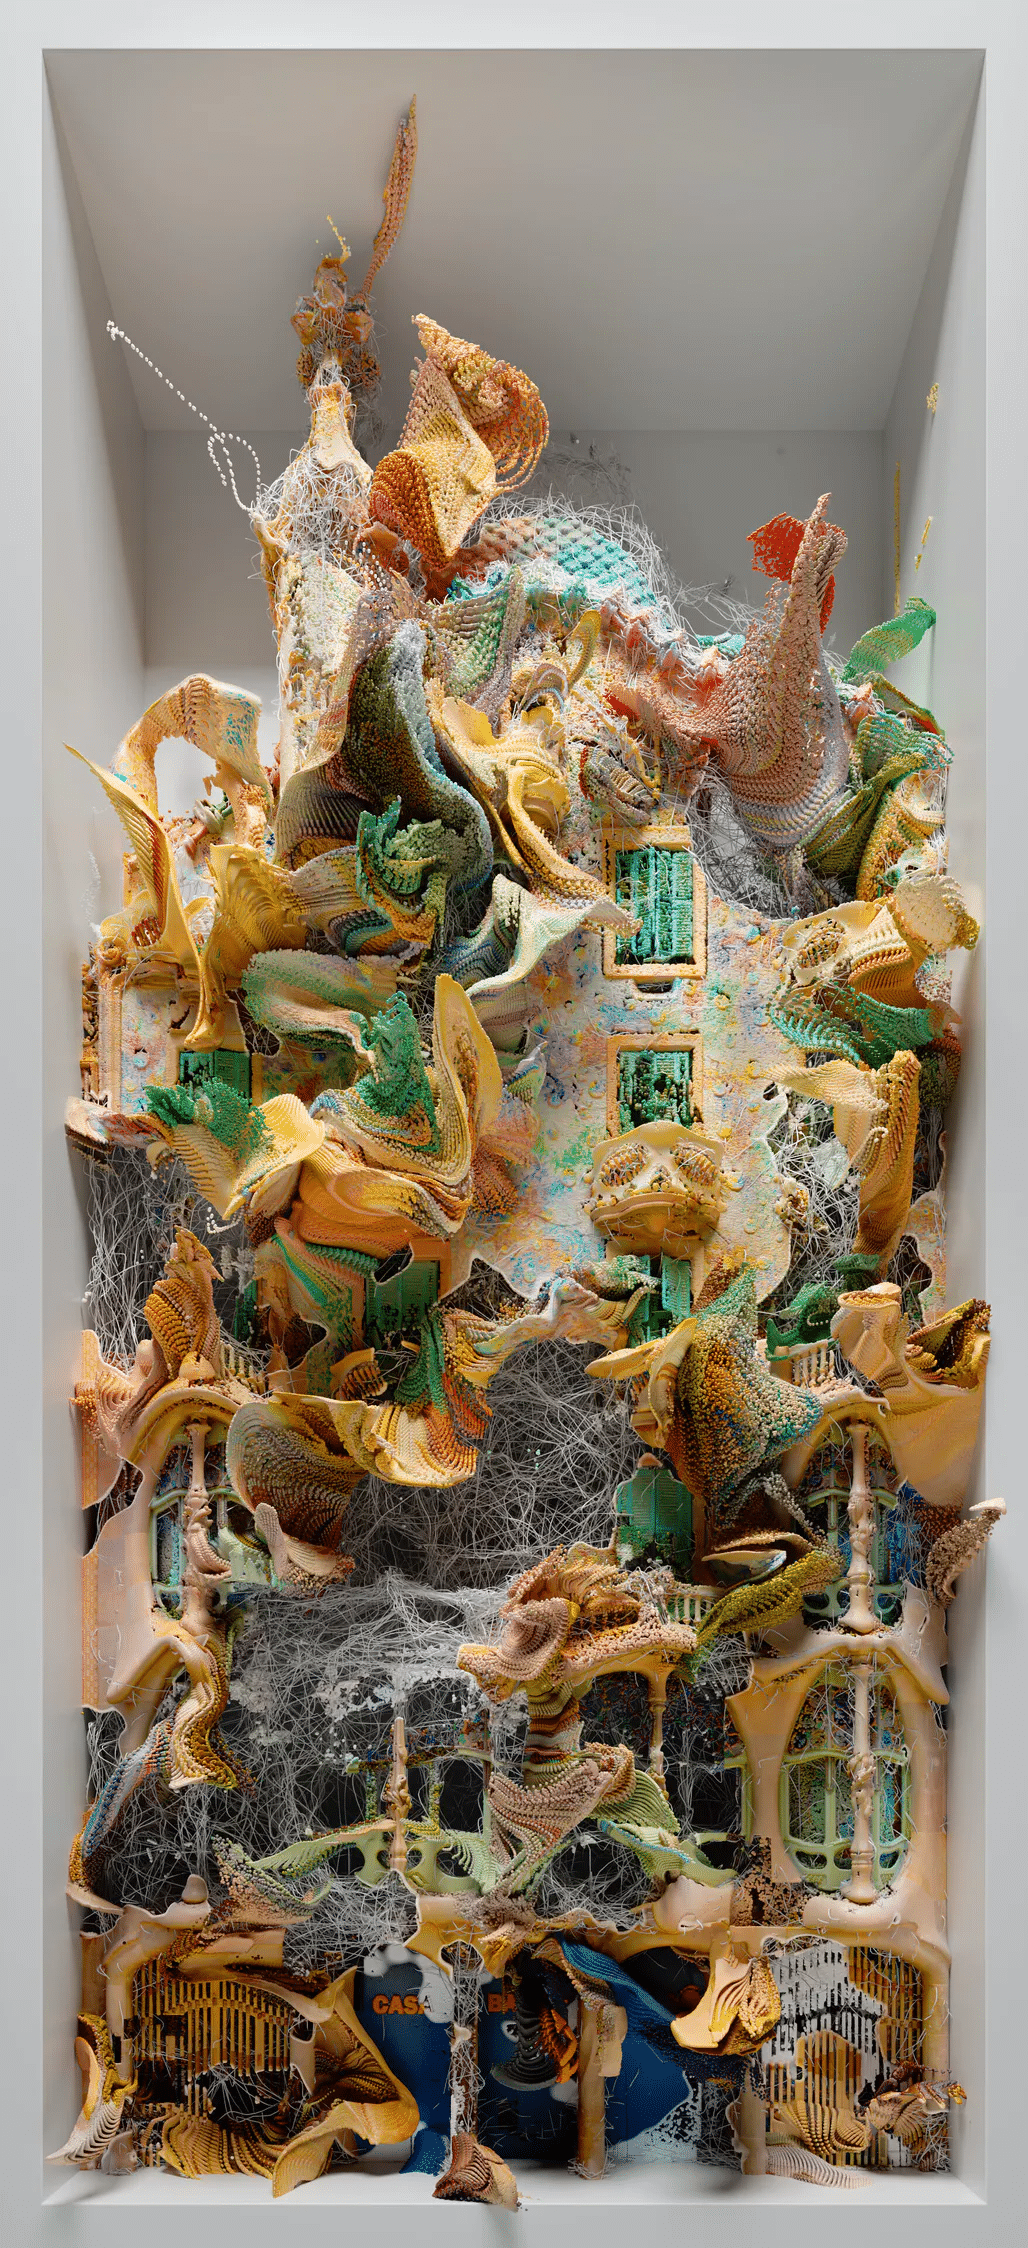 The picture shows Refik Anadol's Living Architecture: Batlló 